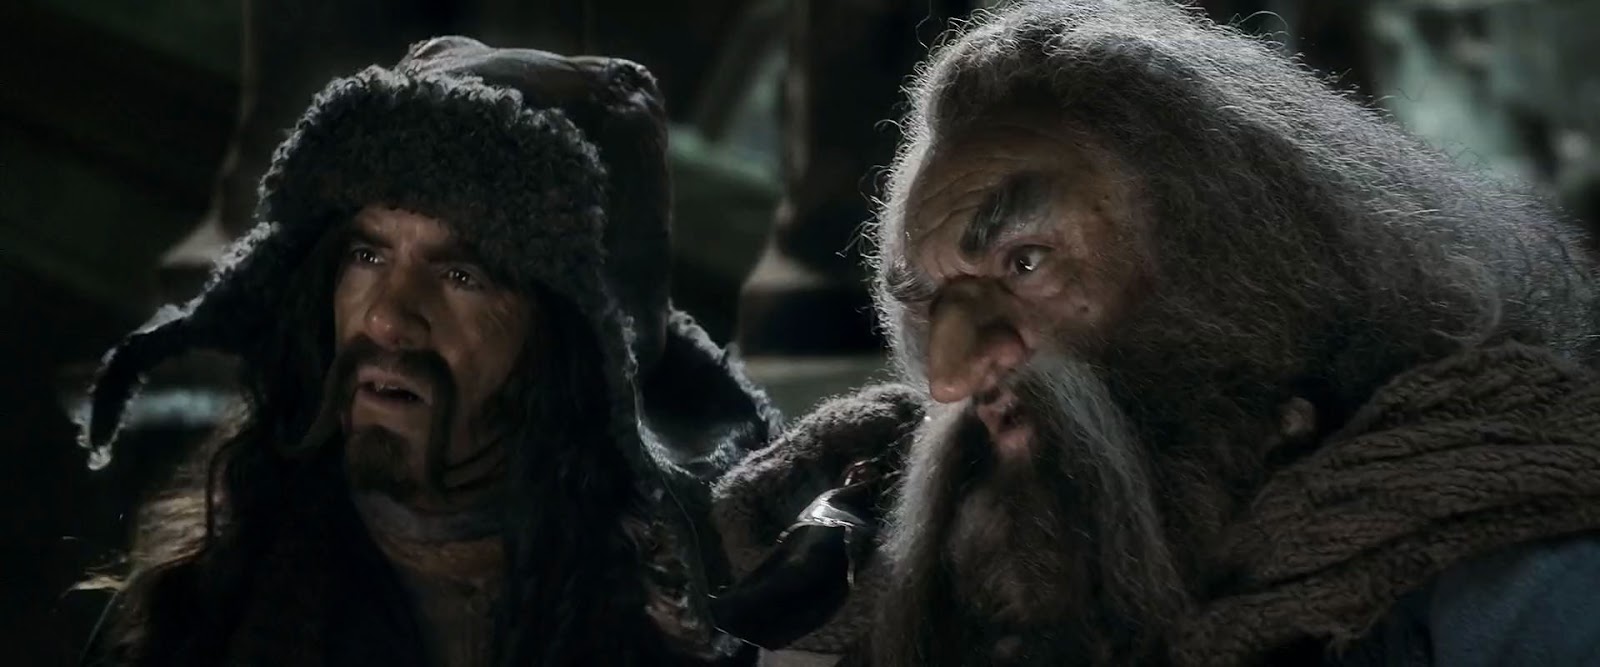 El Hobbit 3 la batalla de los cinco ejércitos (2014) HD 720p Latino 